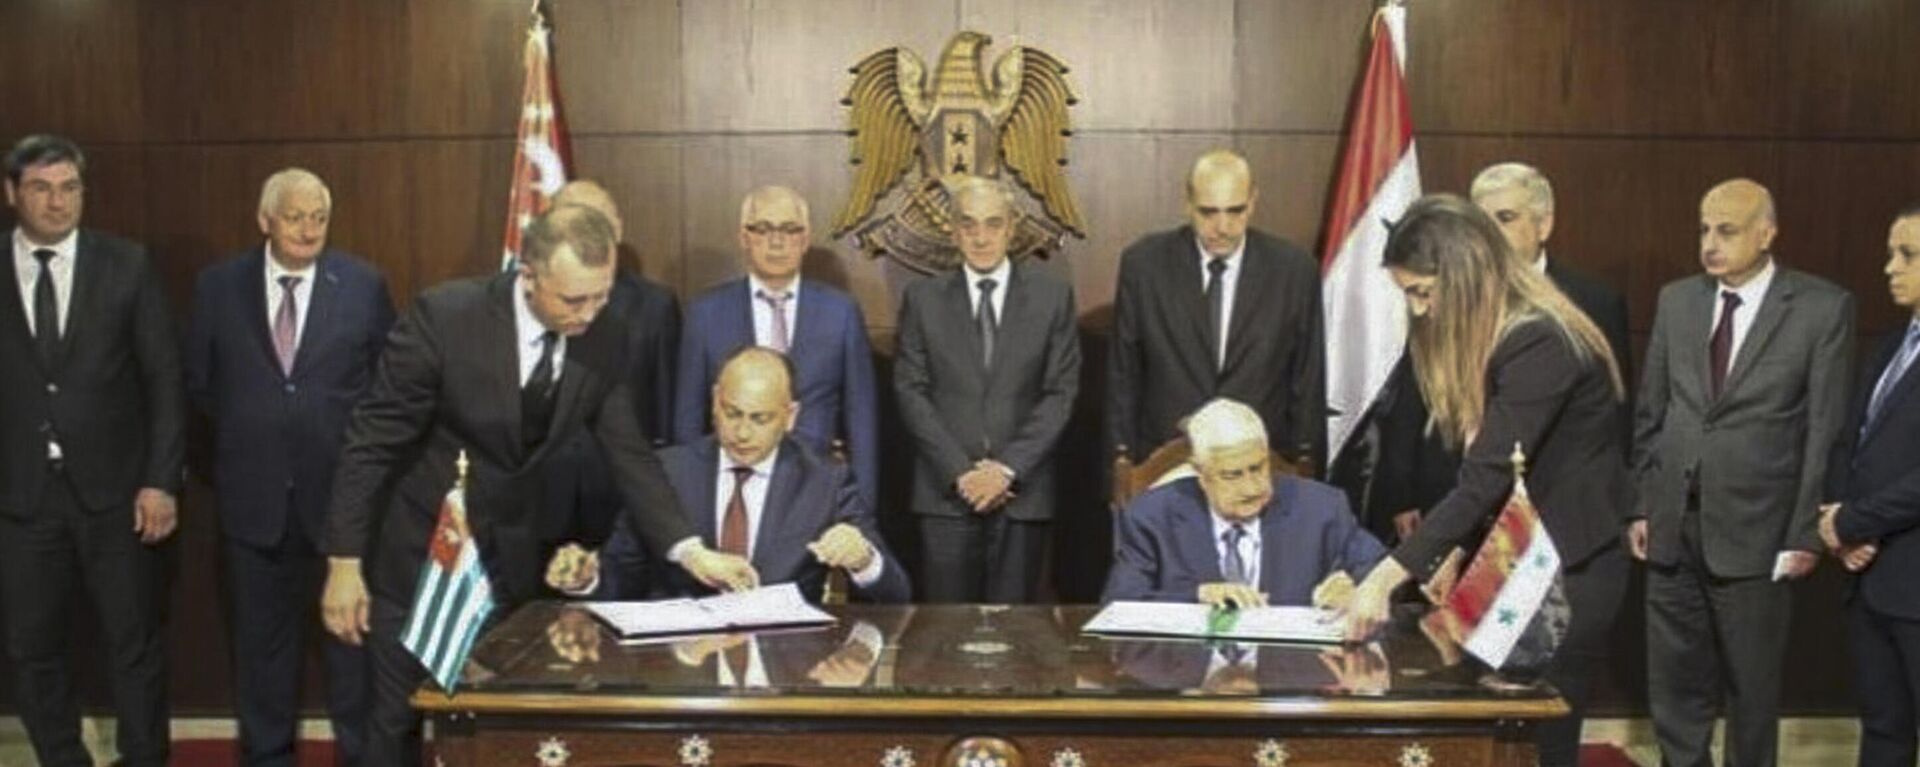 Даур Кове и Валид Аль Муаллем подписали Соглашение между Правительством Республики Абхазия и Правительством Сирийской Арабской Республики - Sputnik Аҧсны, 1920, 06.10.2020